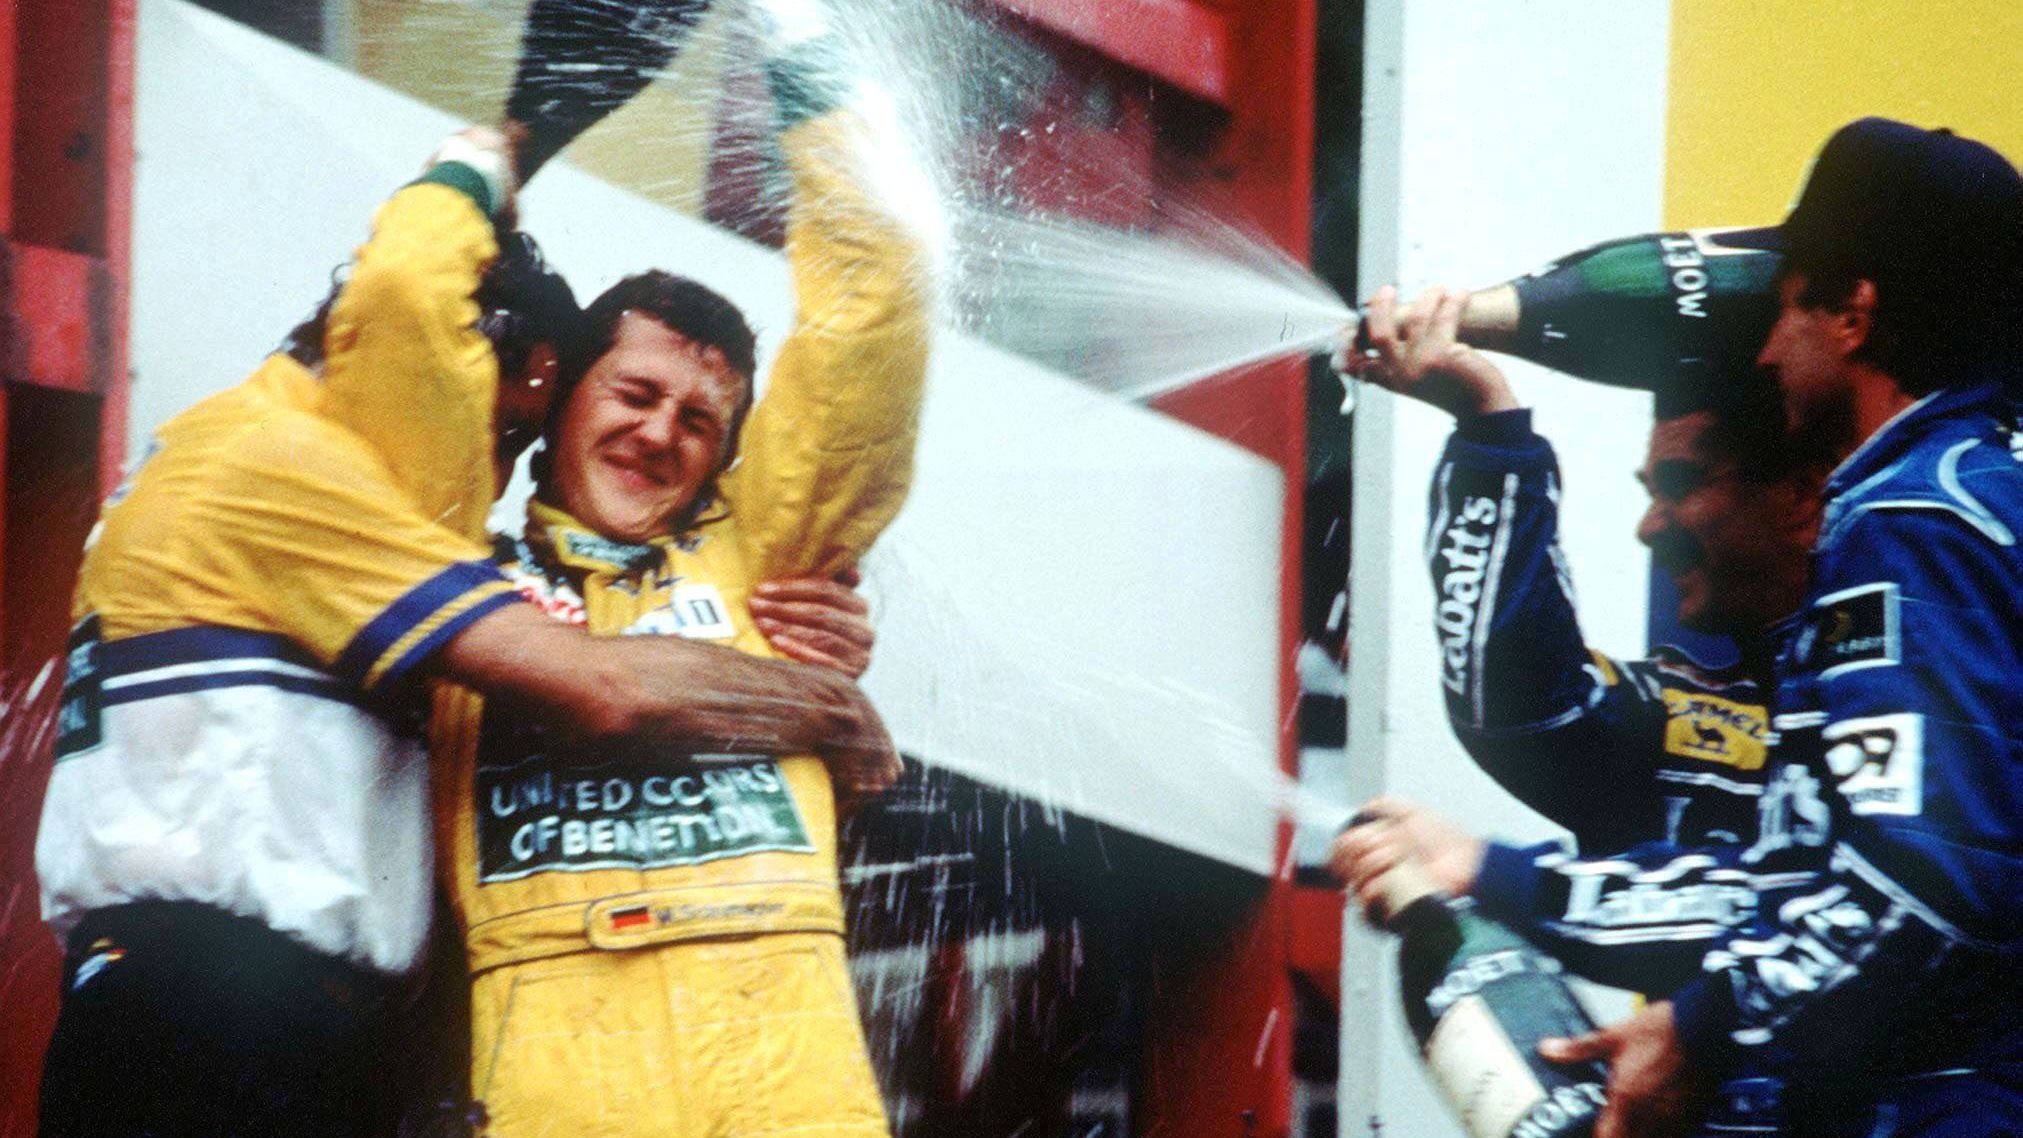 <strong>Erster Sieg im "Wohnzimmer" Spa</strong><br>Am Ort seines Debüts gewann Schumacher ein Jahr später sein allererstes Formel-1-Rennen. Bei wechselhaften Bedingungen schlug er der überlegenen Williams-Konkurrenz ein Schnippchen und fuhr dank einer perfekten Strategie zum Sieg. Am Ende des Jahres wurde er WM-Dritter.